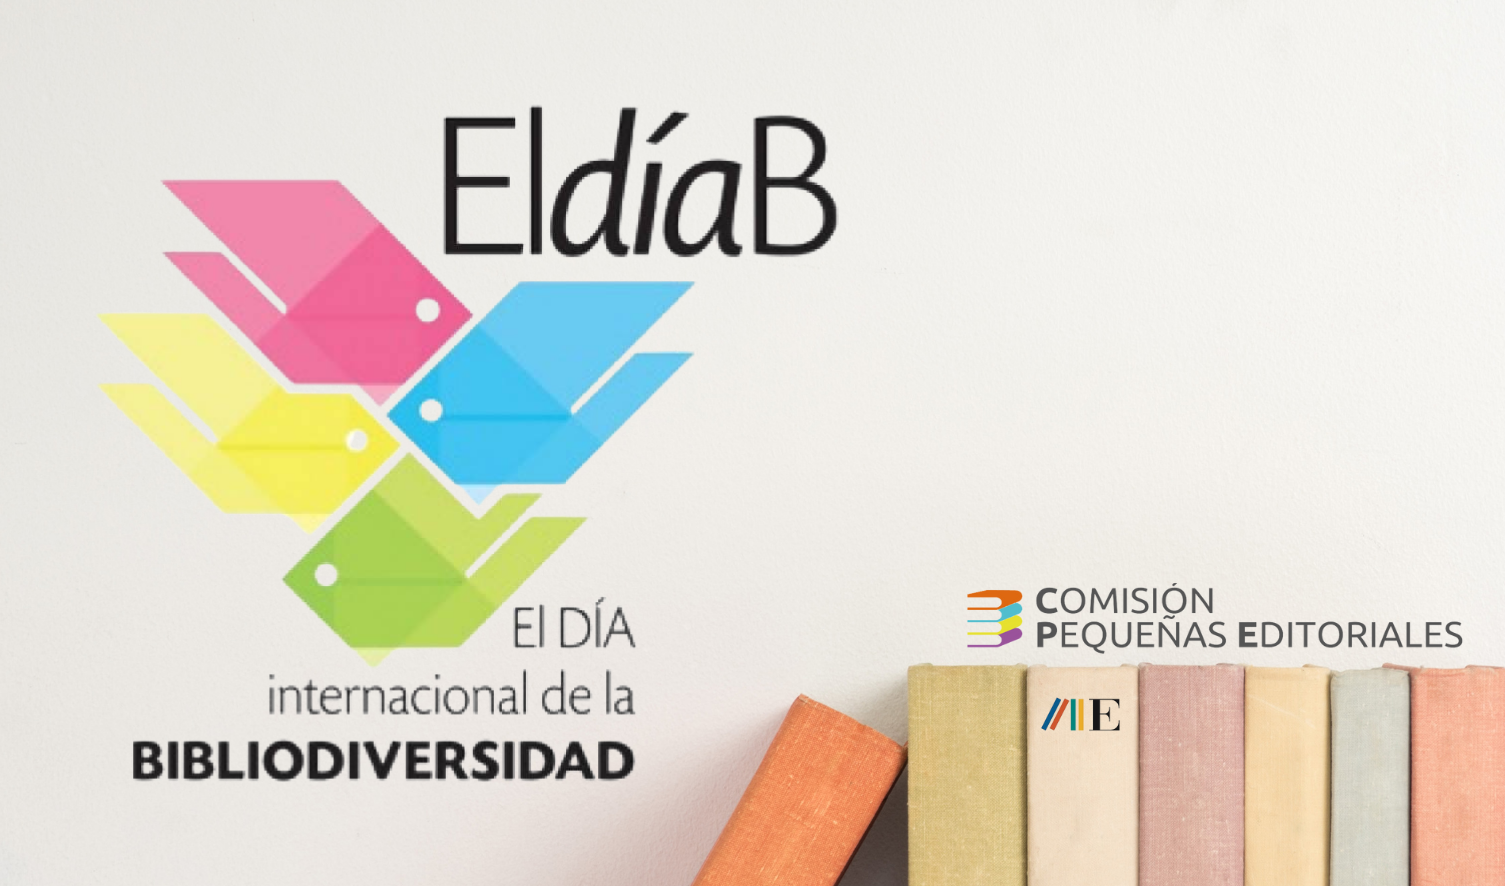 DÍA INTERNACIONAL DE LA BIBLIODIVERSIDAD 2022. Una veintena de pequeñas editoriales representarán a la bibliodiversidad madrileña en Liber